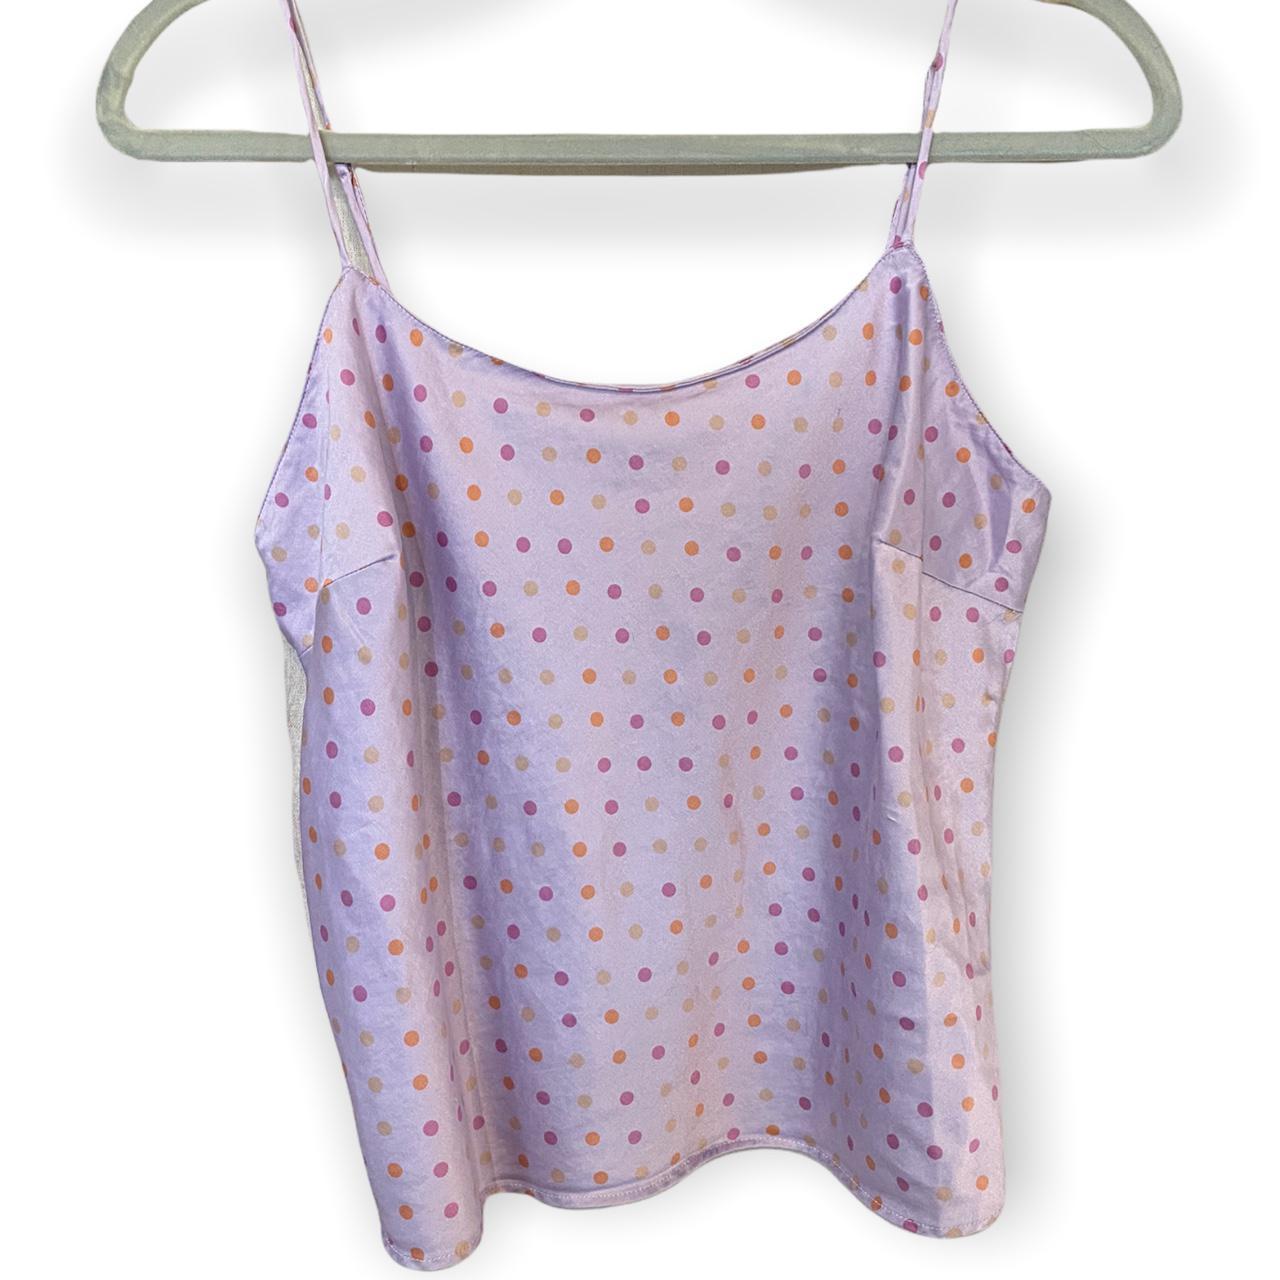 Product Image 1 - 100% silk pajama tank top